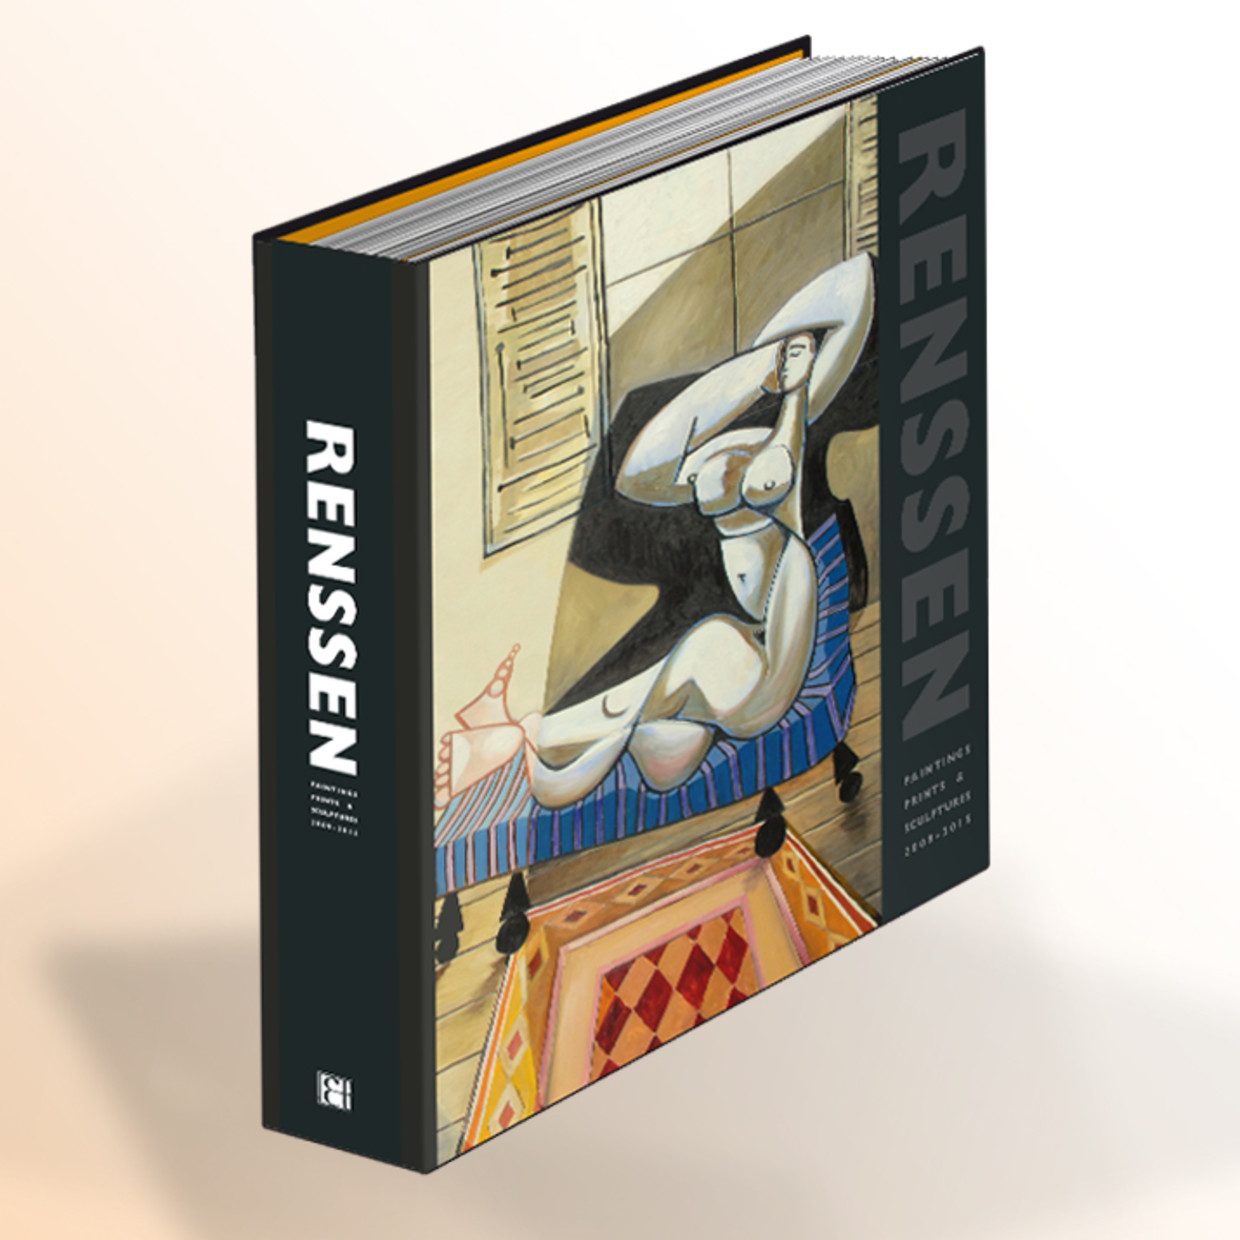 Erik Renssen, RENSSEN BOOK - Paintings, Prints and Sculpture, 2009-2015